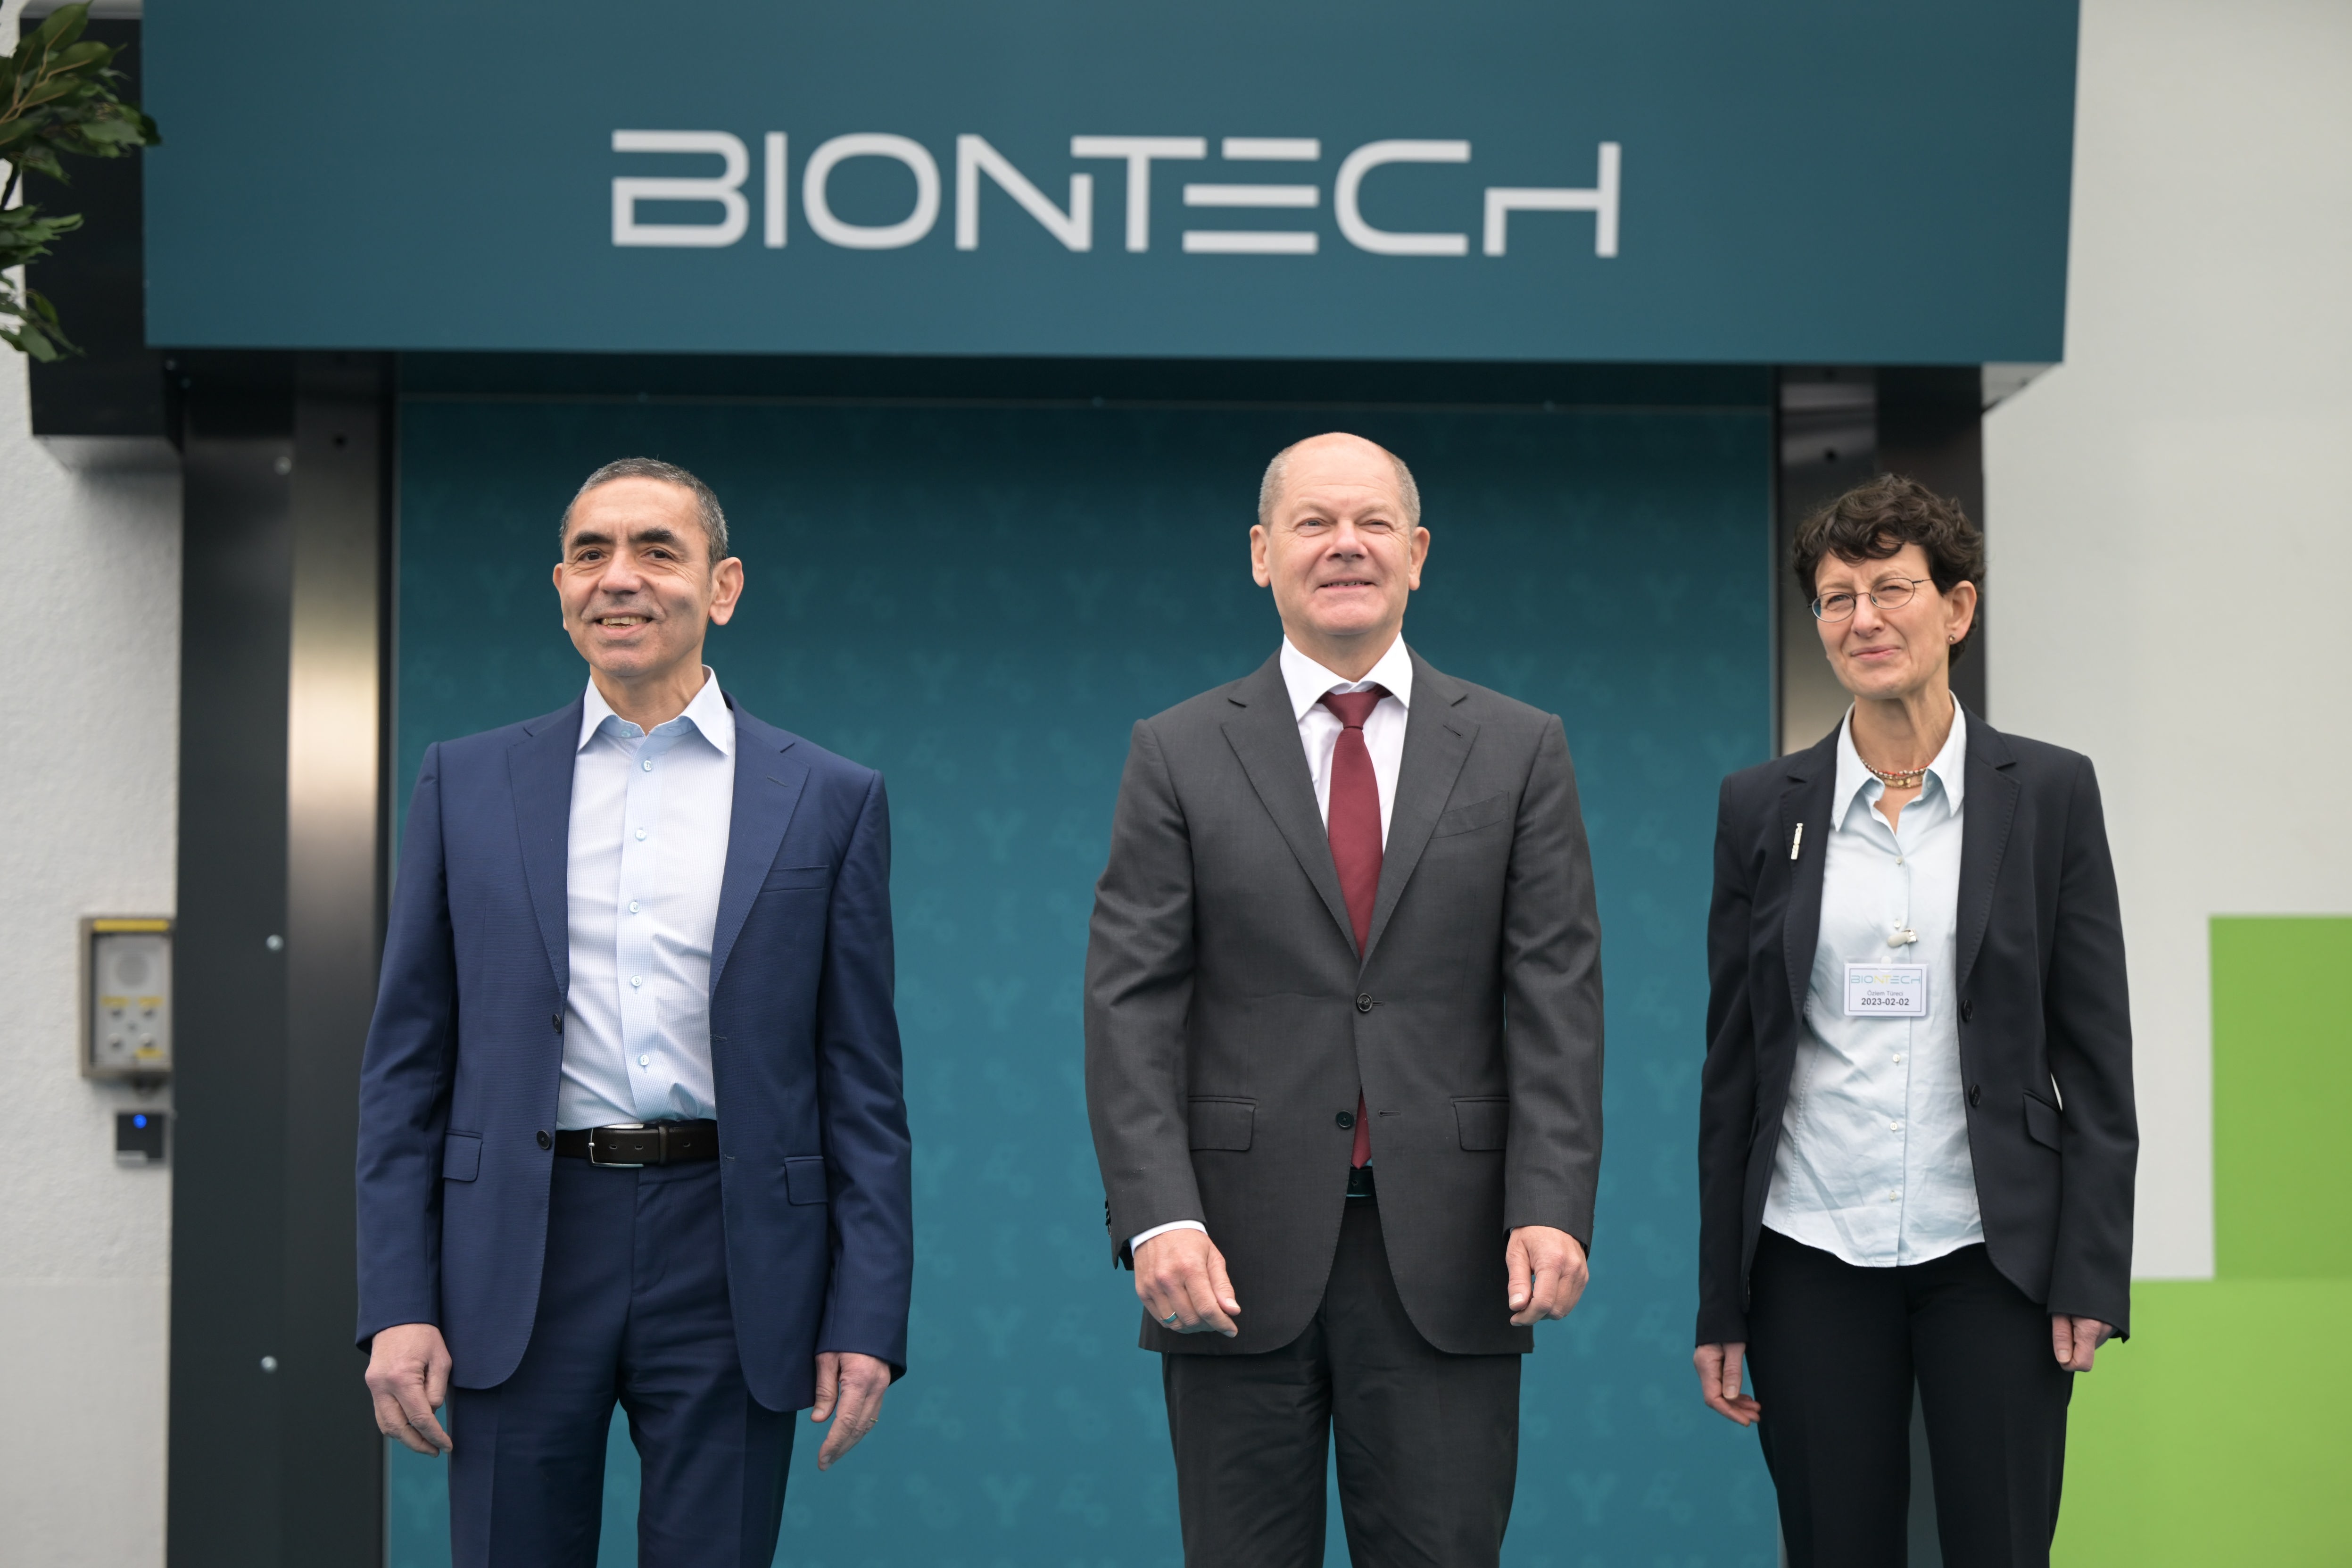 Besuch bei Biontech - Scholz sagt Pharmabranche beschleunigte Genehmigungsverfahren zu